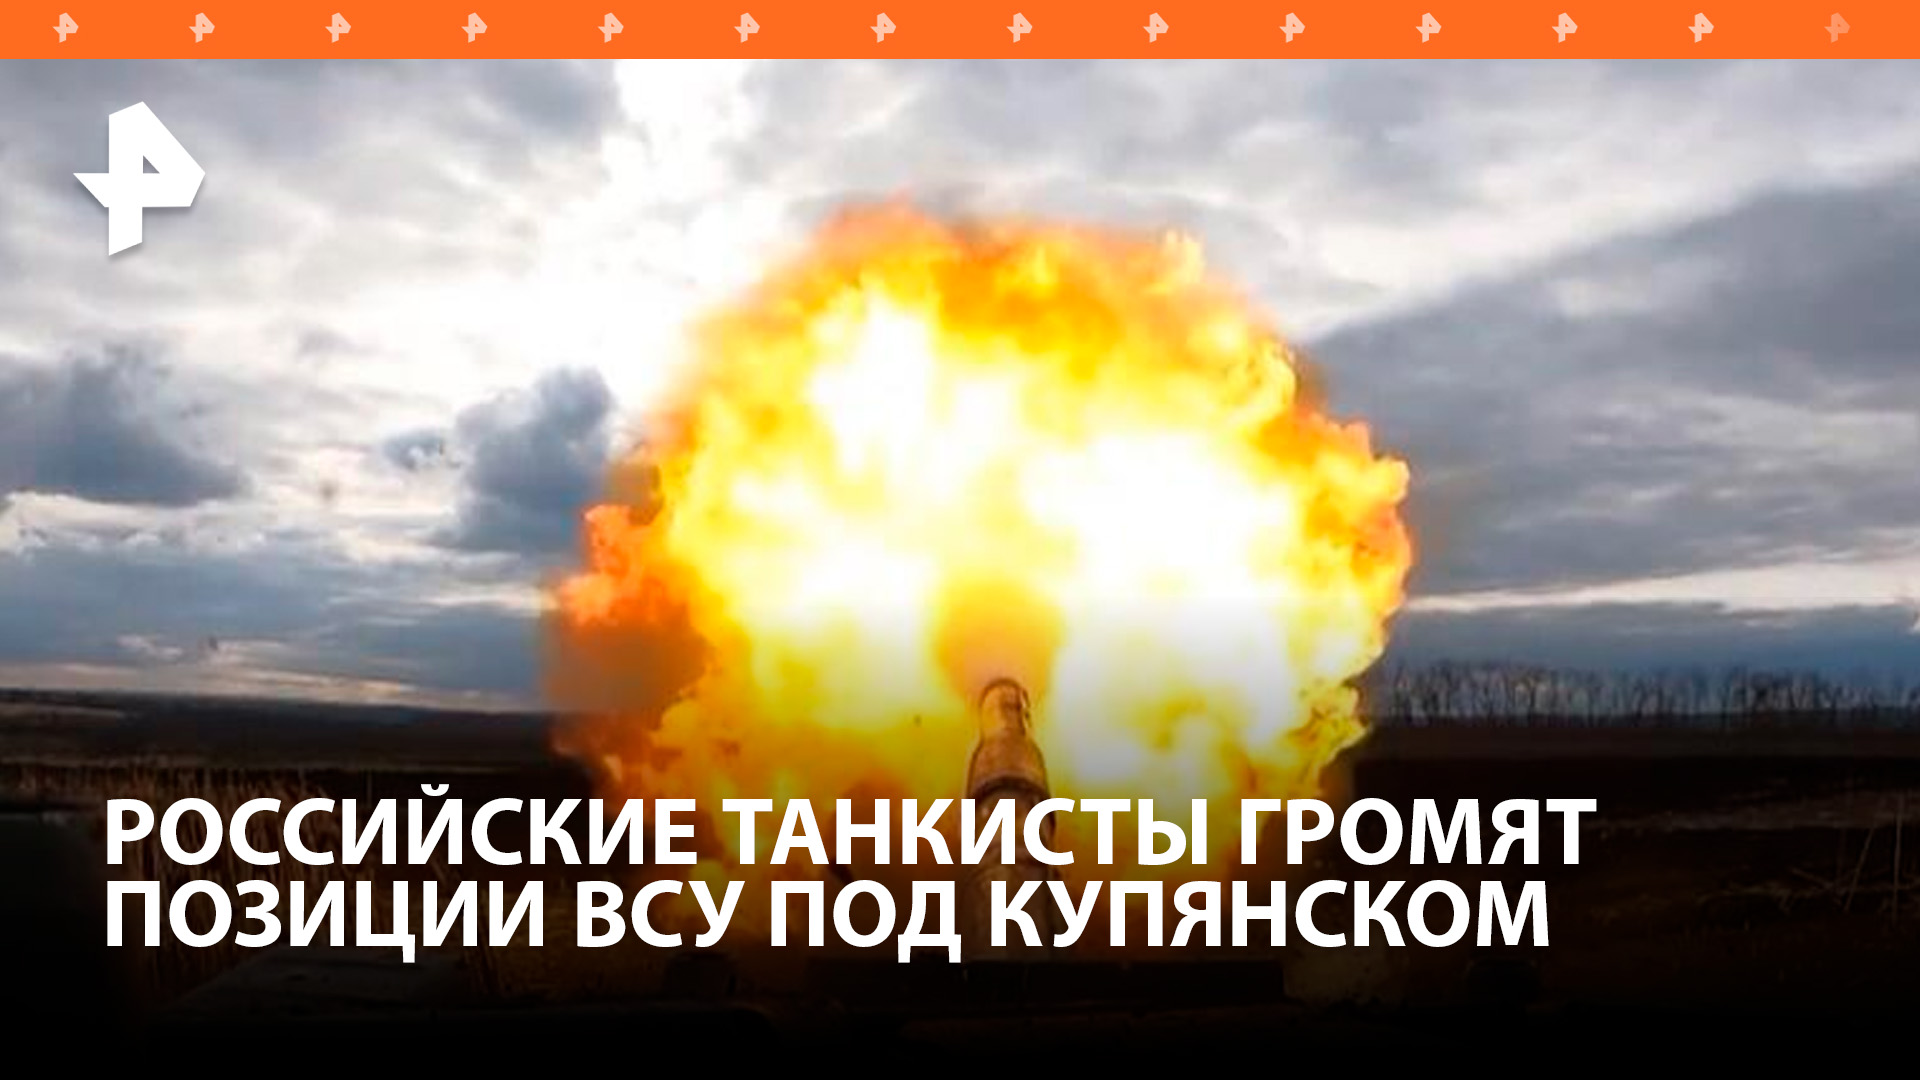 Российский танк выдержал попадание в башню под Купянском / РЕН Новости